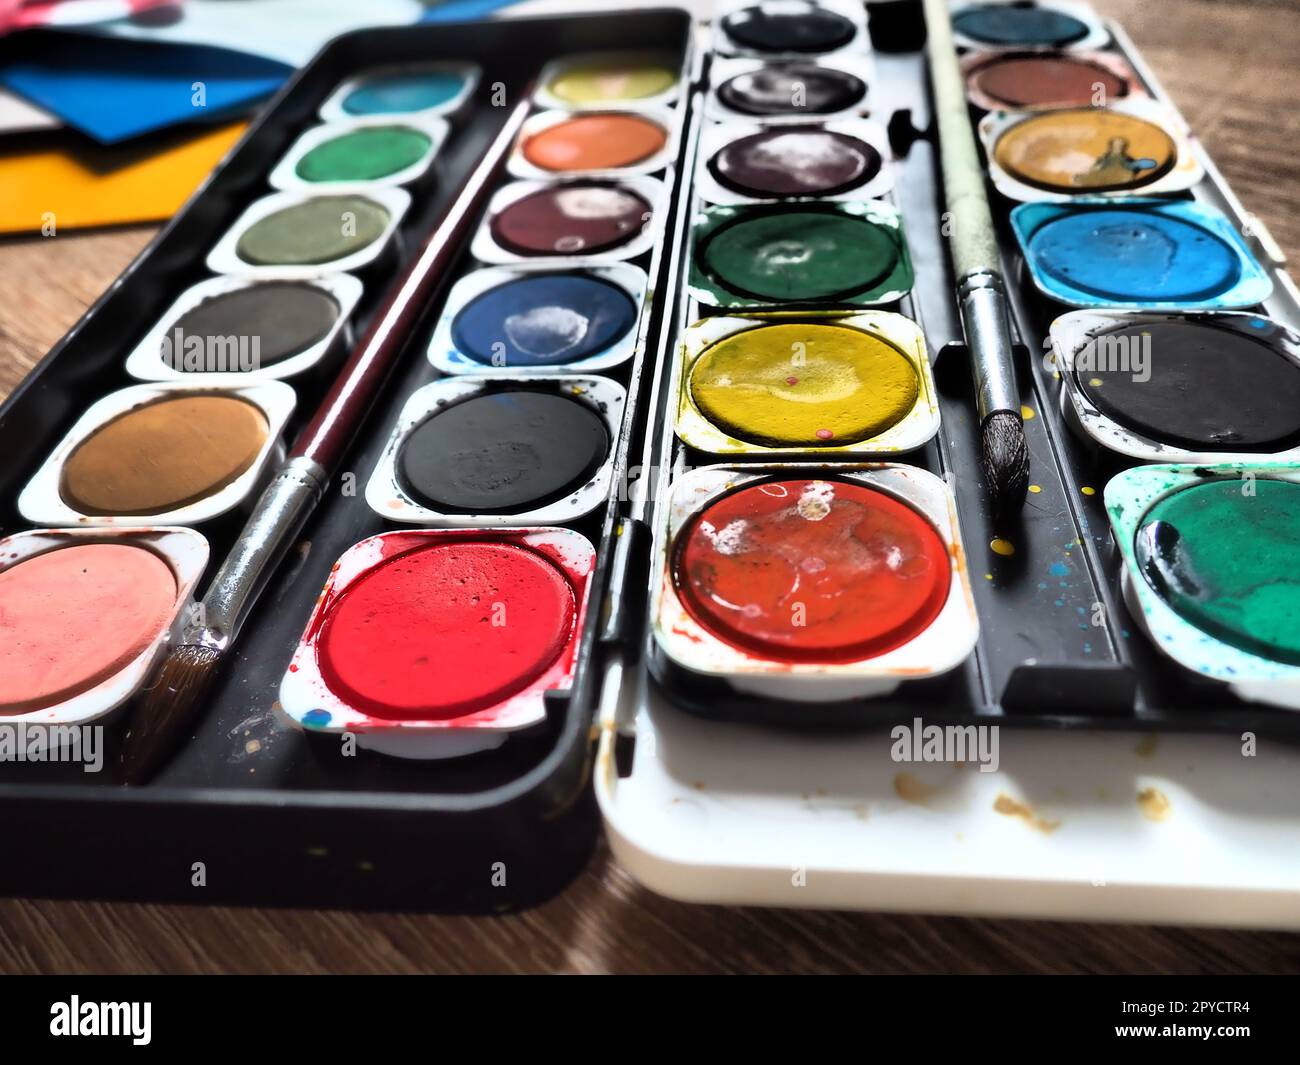 Ein Satz von Wasserfarben in verschiedenen Farben für das Zeichnen. Mehrfarbige runde Behälter mit heller Farbe. Werkzeuge für den Unterricht von Zeichnen und Arbeit. Farbiges Papier. Rot, Blau, Gelb, Grün. Stockfoto